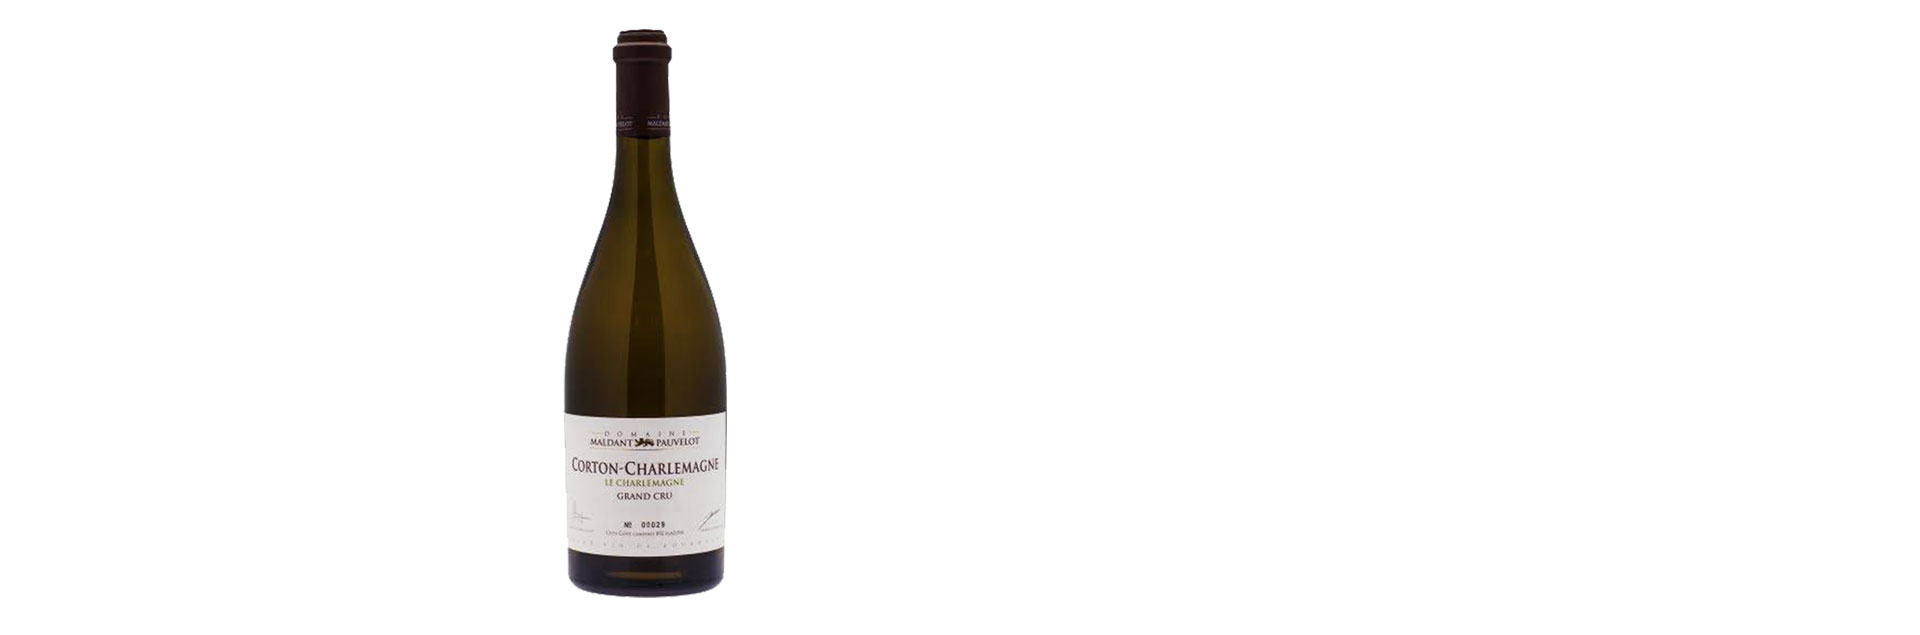 Rượu Vang Pháp Domaine Maldant-Pauvelot- Les Beaune - Corton Charlemagne 2014